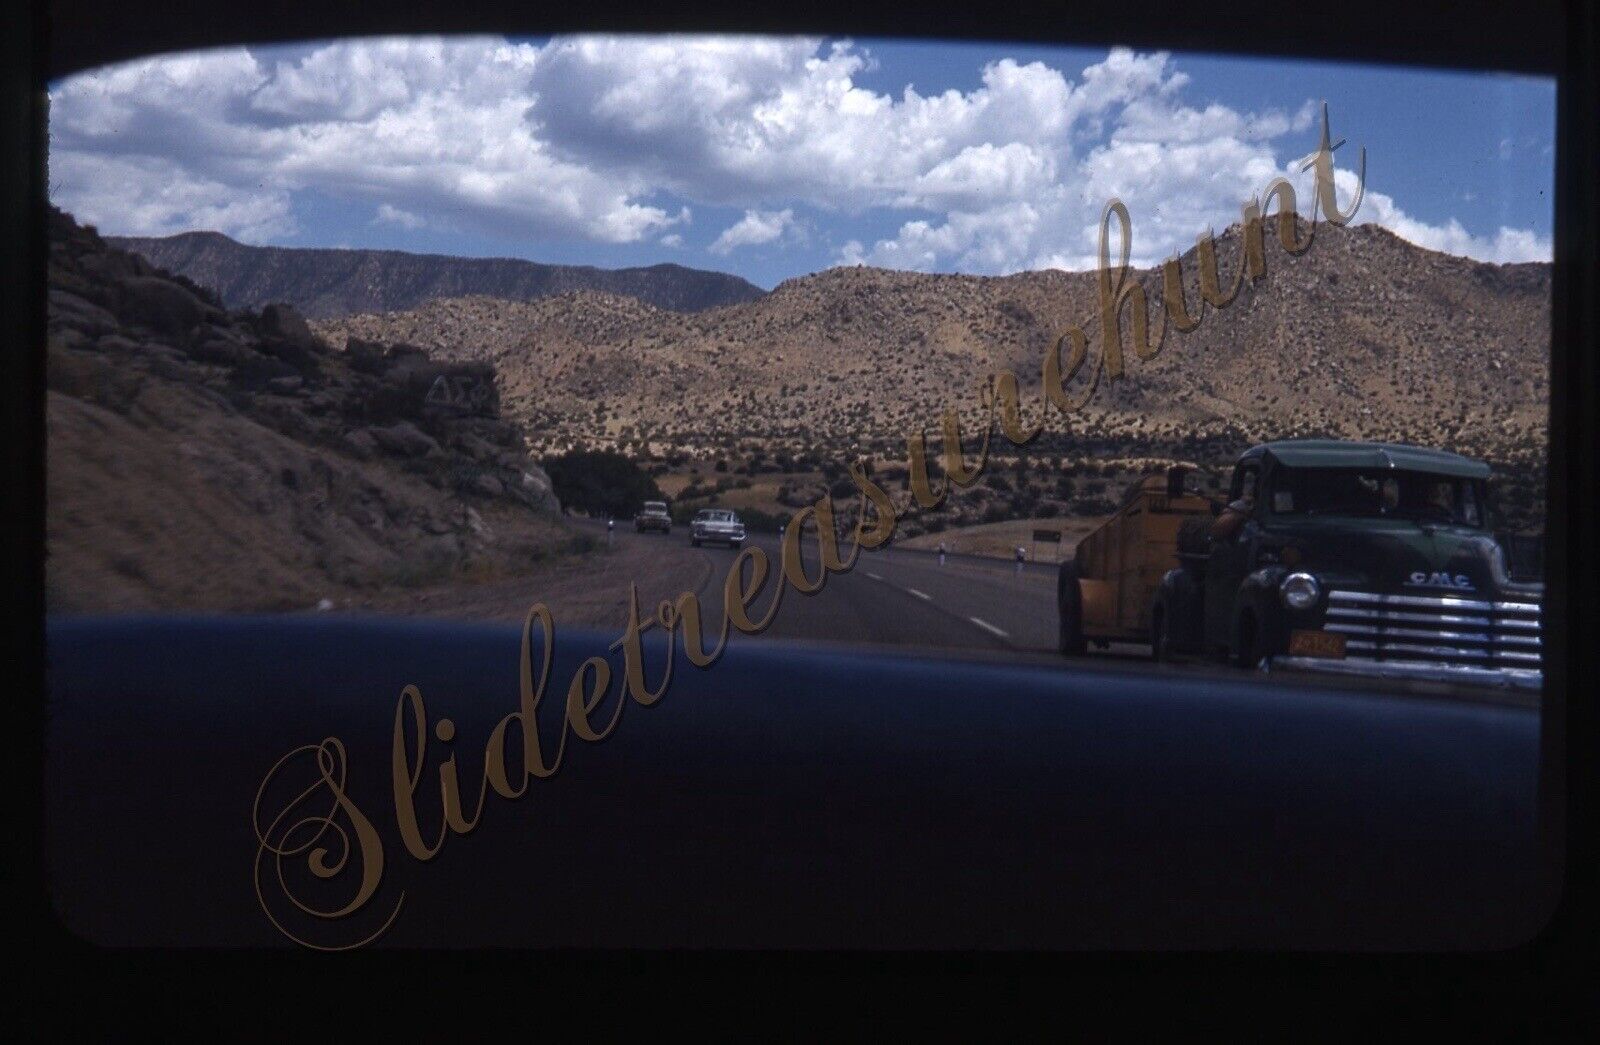 Road Scene Desert GMC Truck Cars 35mm Slide 1950s Red Border Kodachrome